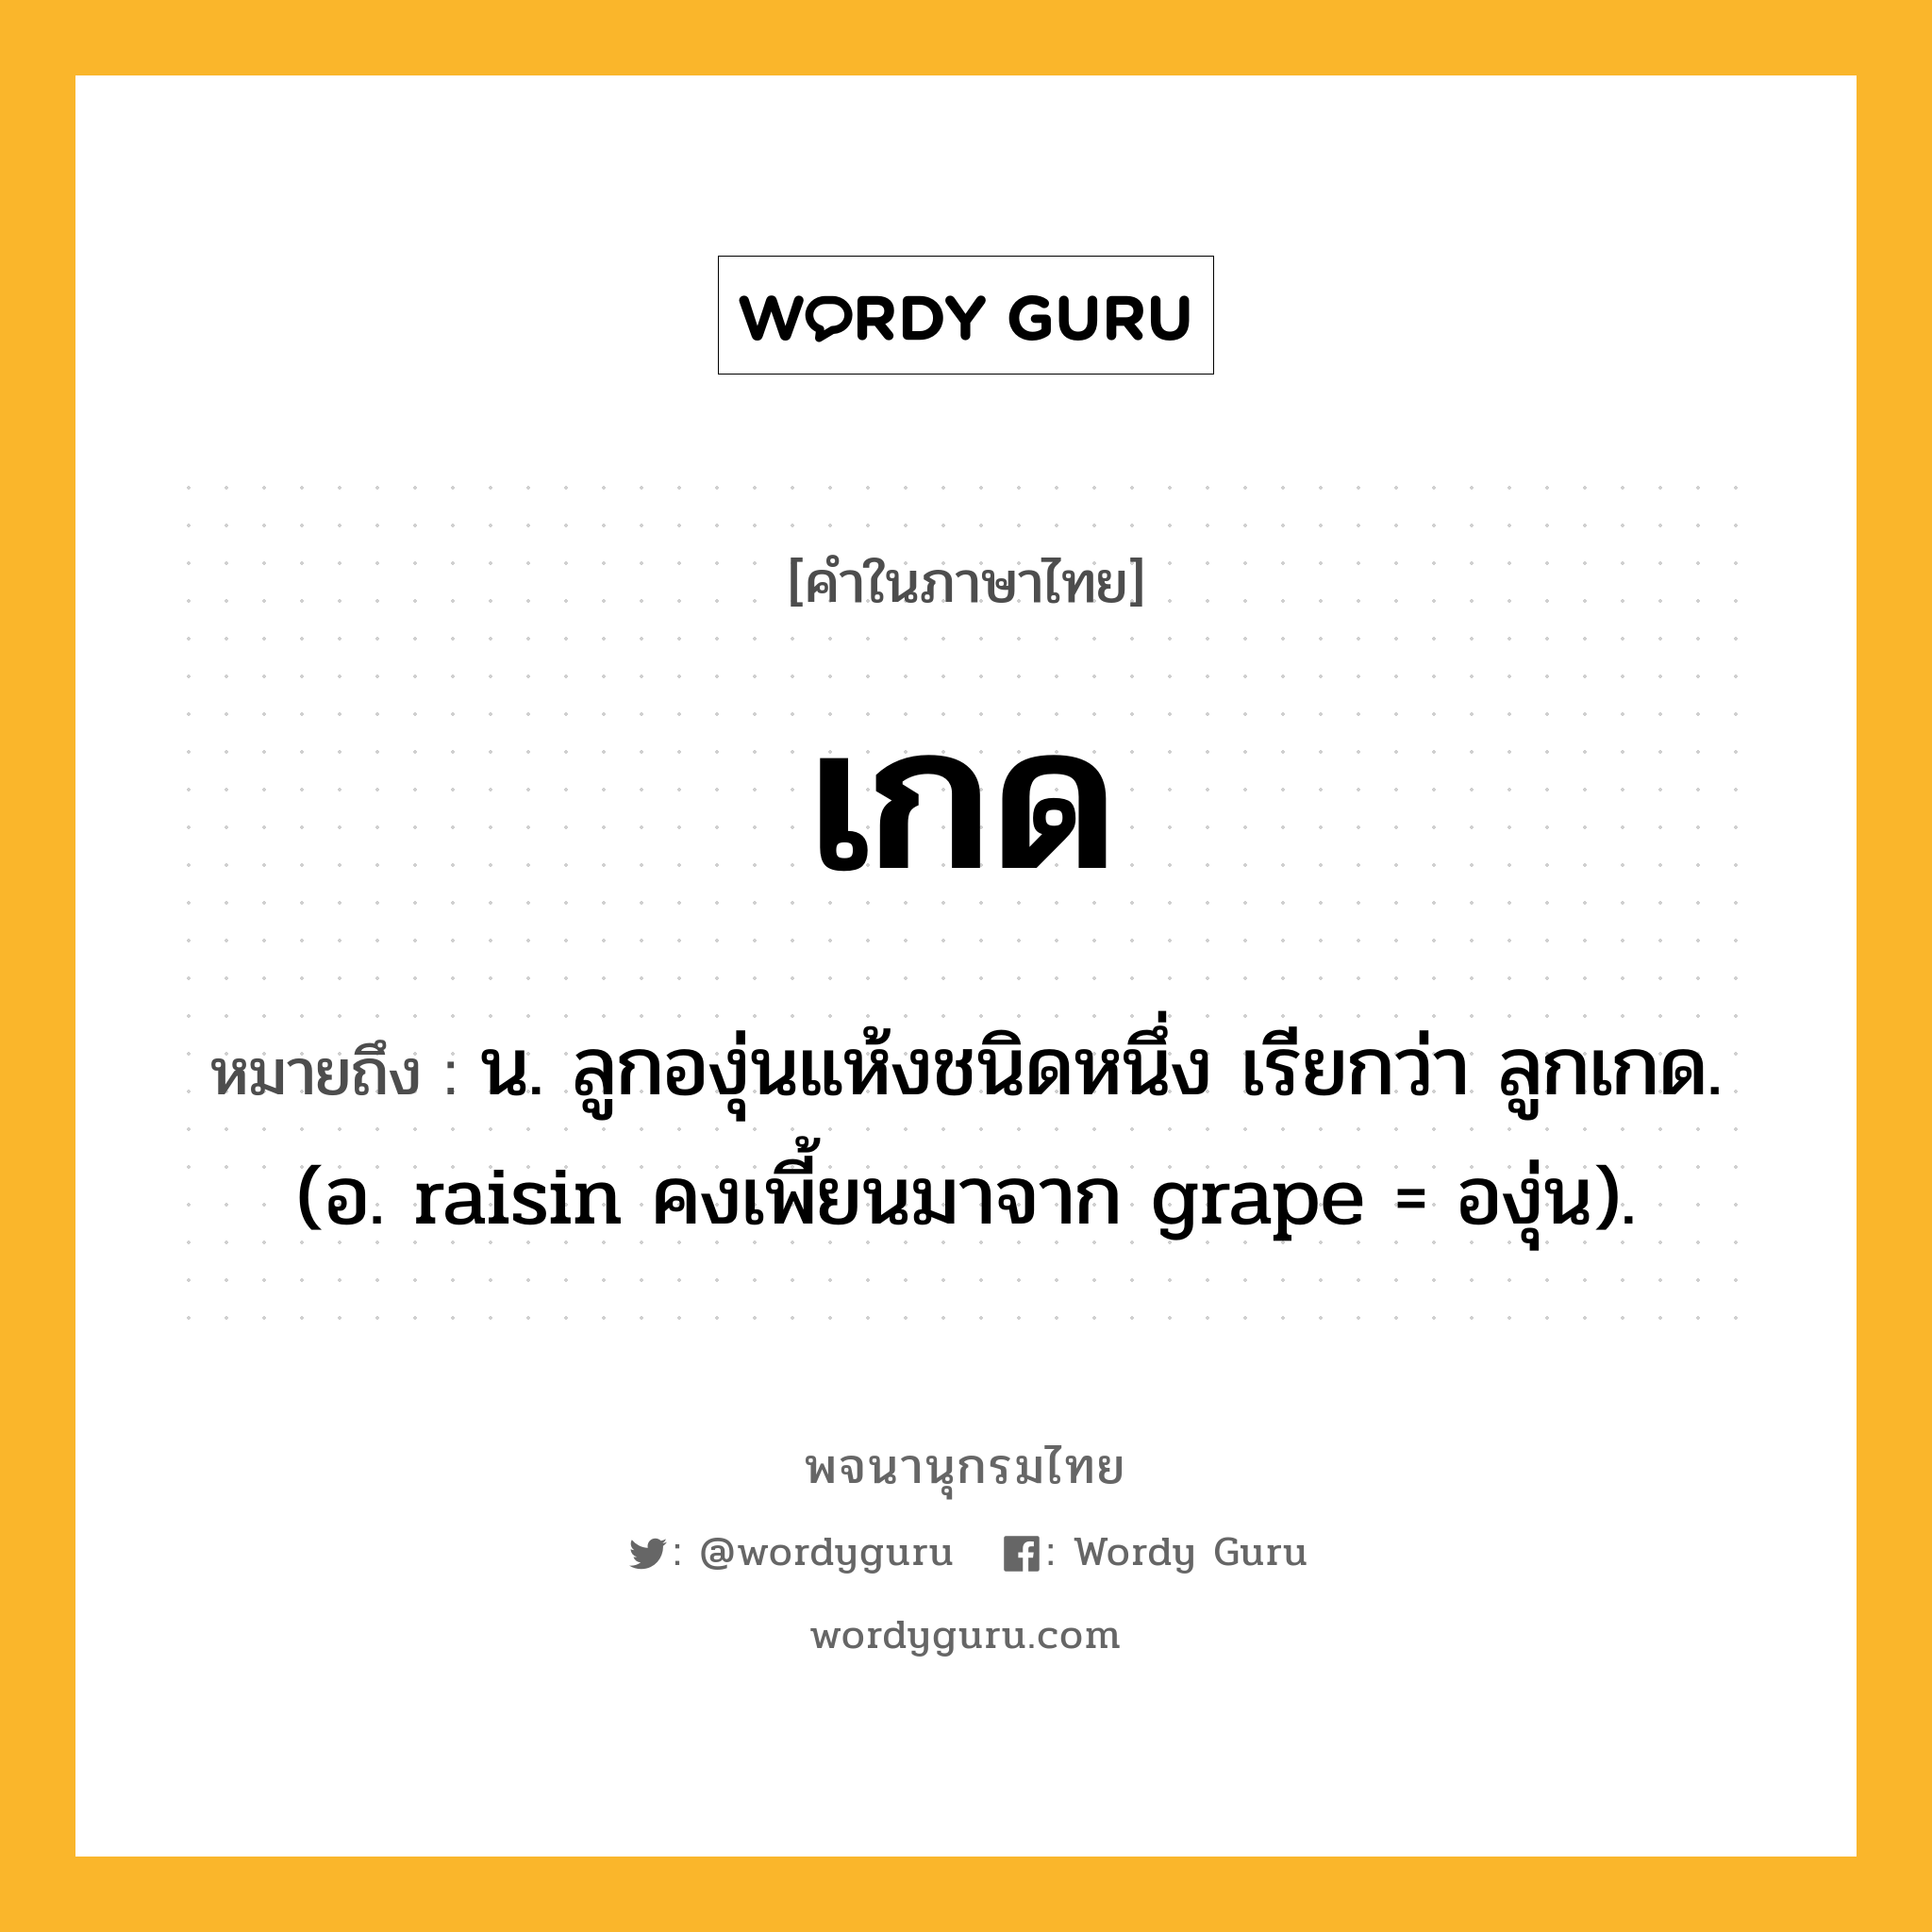 เกด หมายถึงอะไร?, คำในภาษาไทย เกด หมายถึง น. ลูกองุ่นแห้งชนิดหนึ่ง เรียกว่า ลูกเกด. (อ. raisin คงเพี้ยนมาจาก grape = องุ่น).